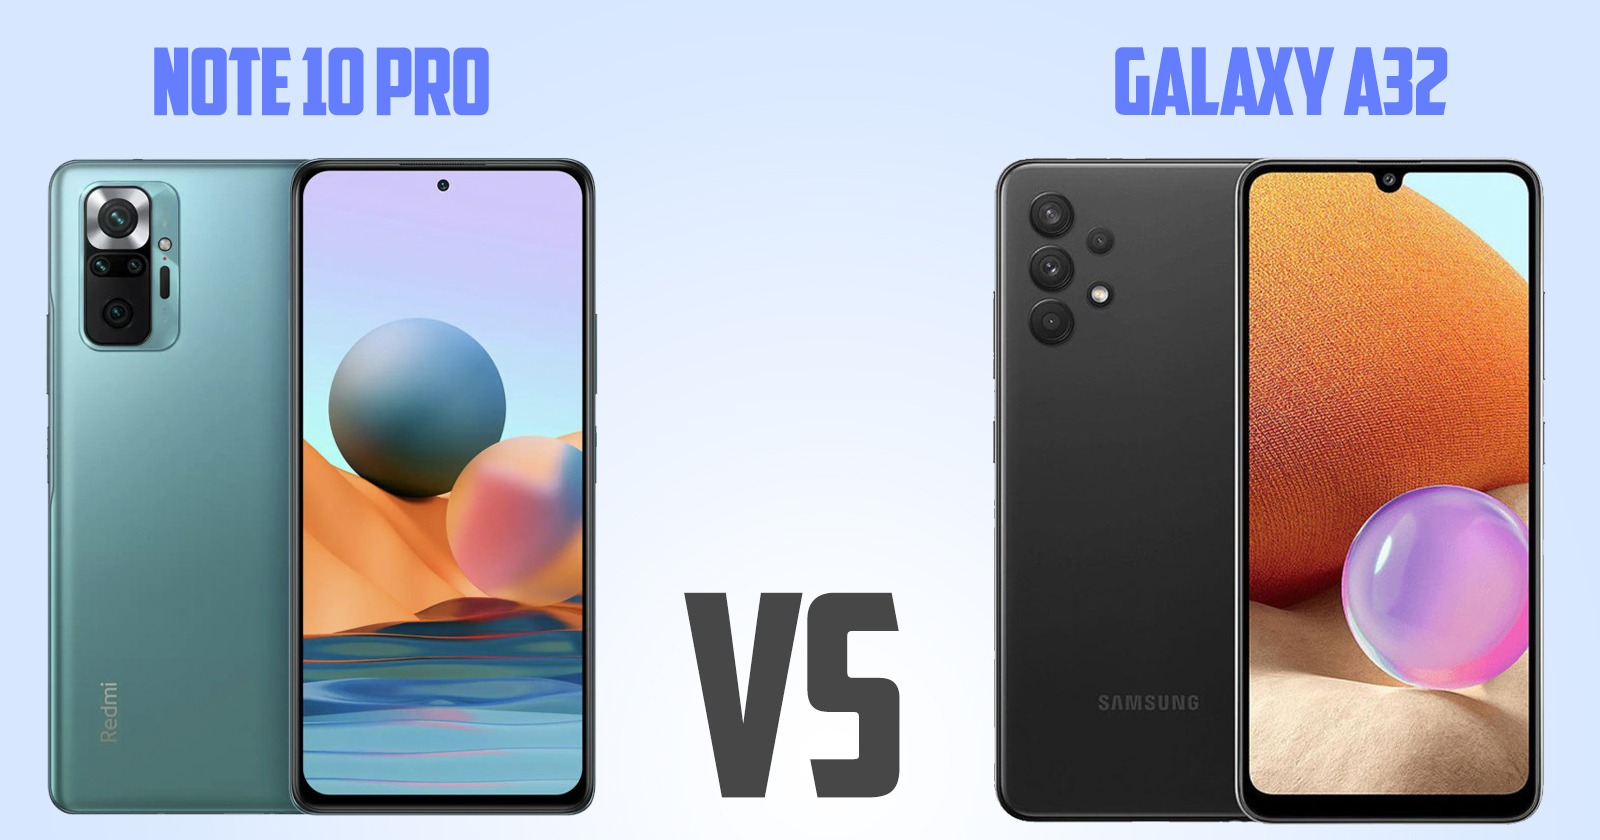 Redmi note 10 pro vs Samsung Galaxy A32